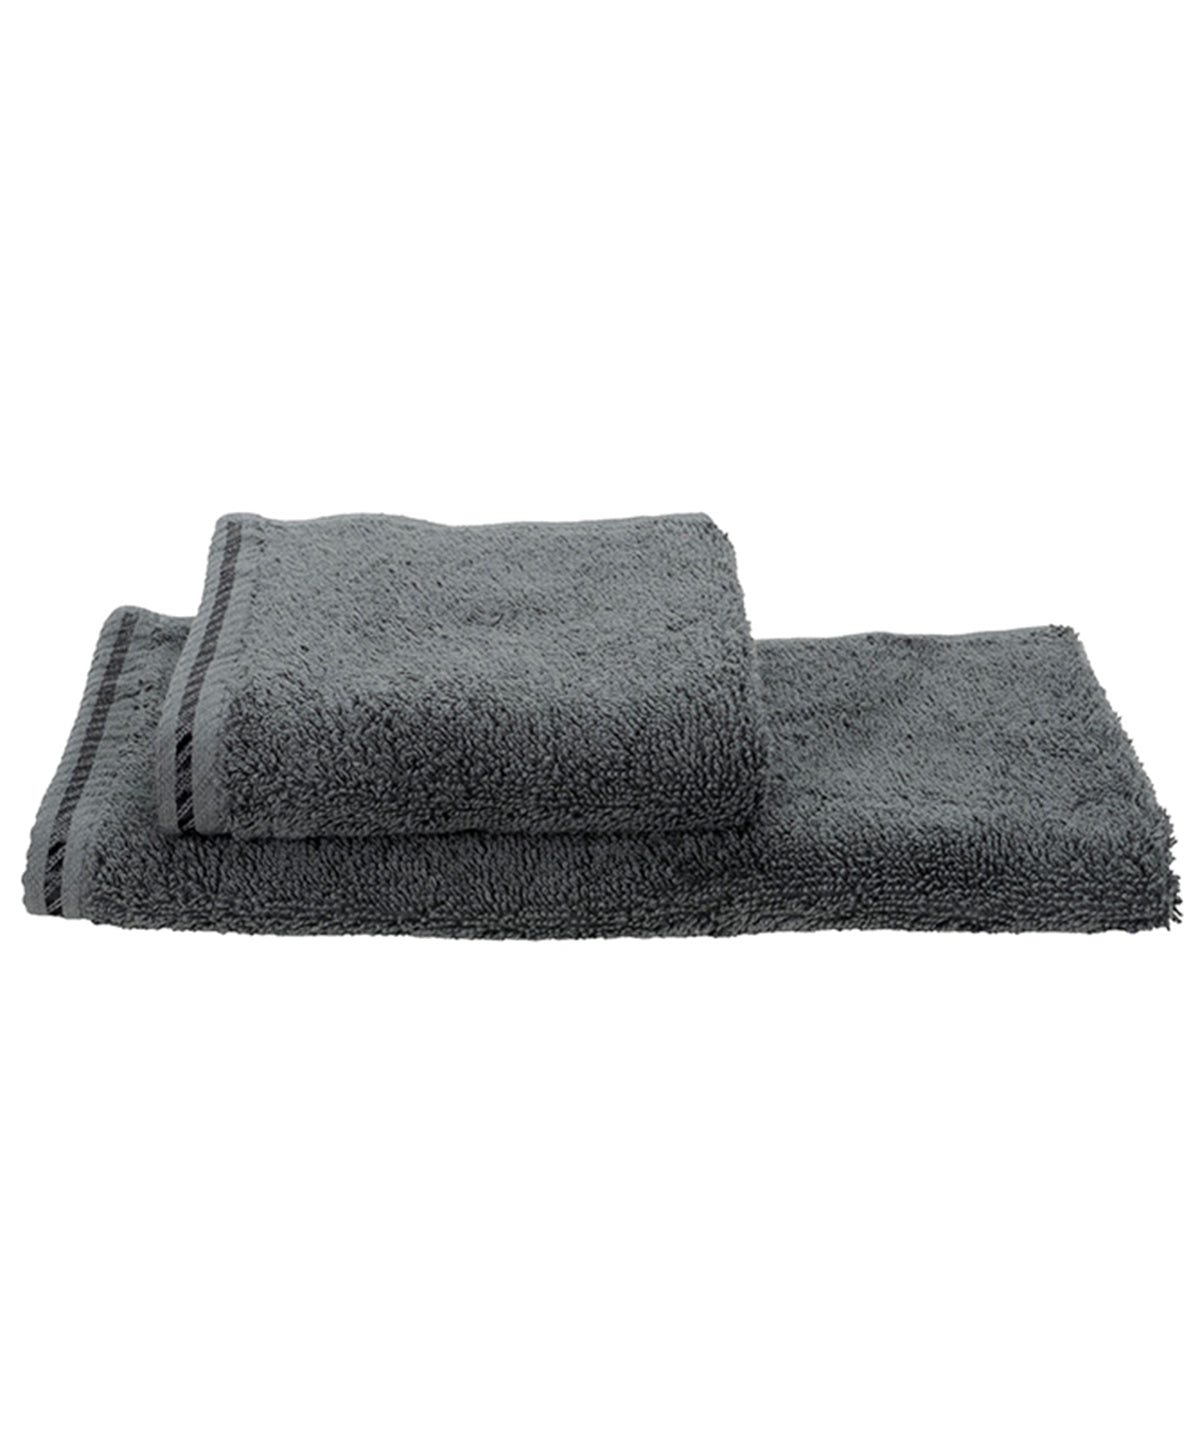 ARTG® Guest towel